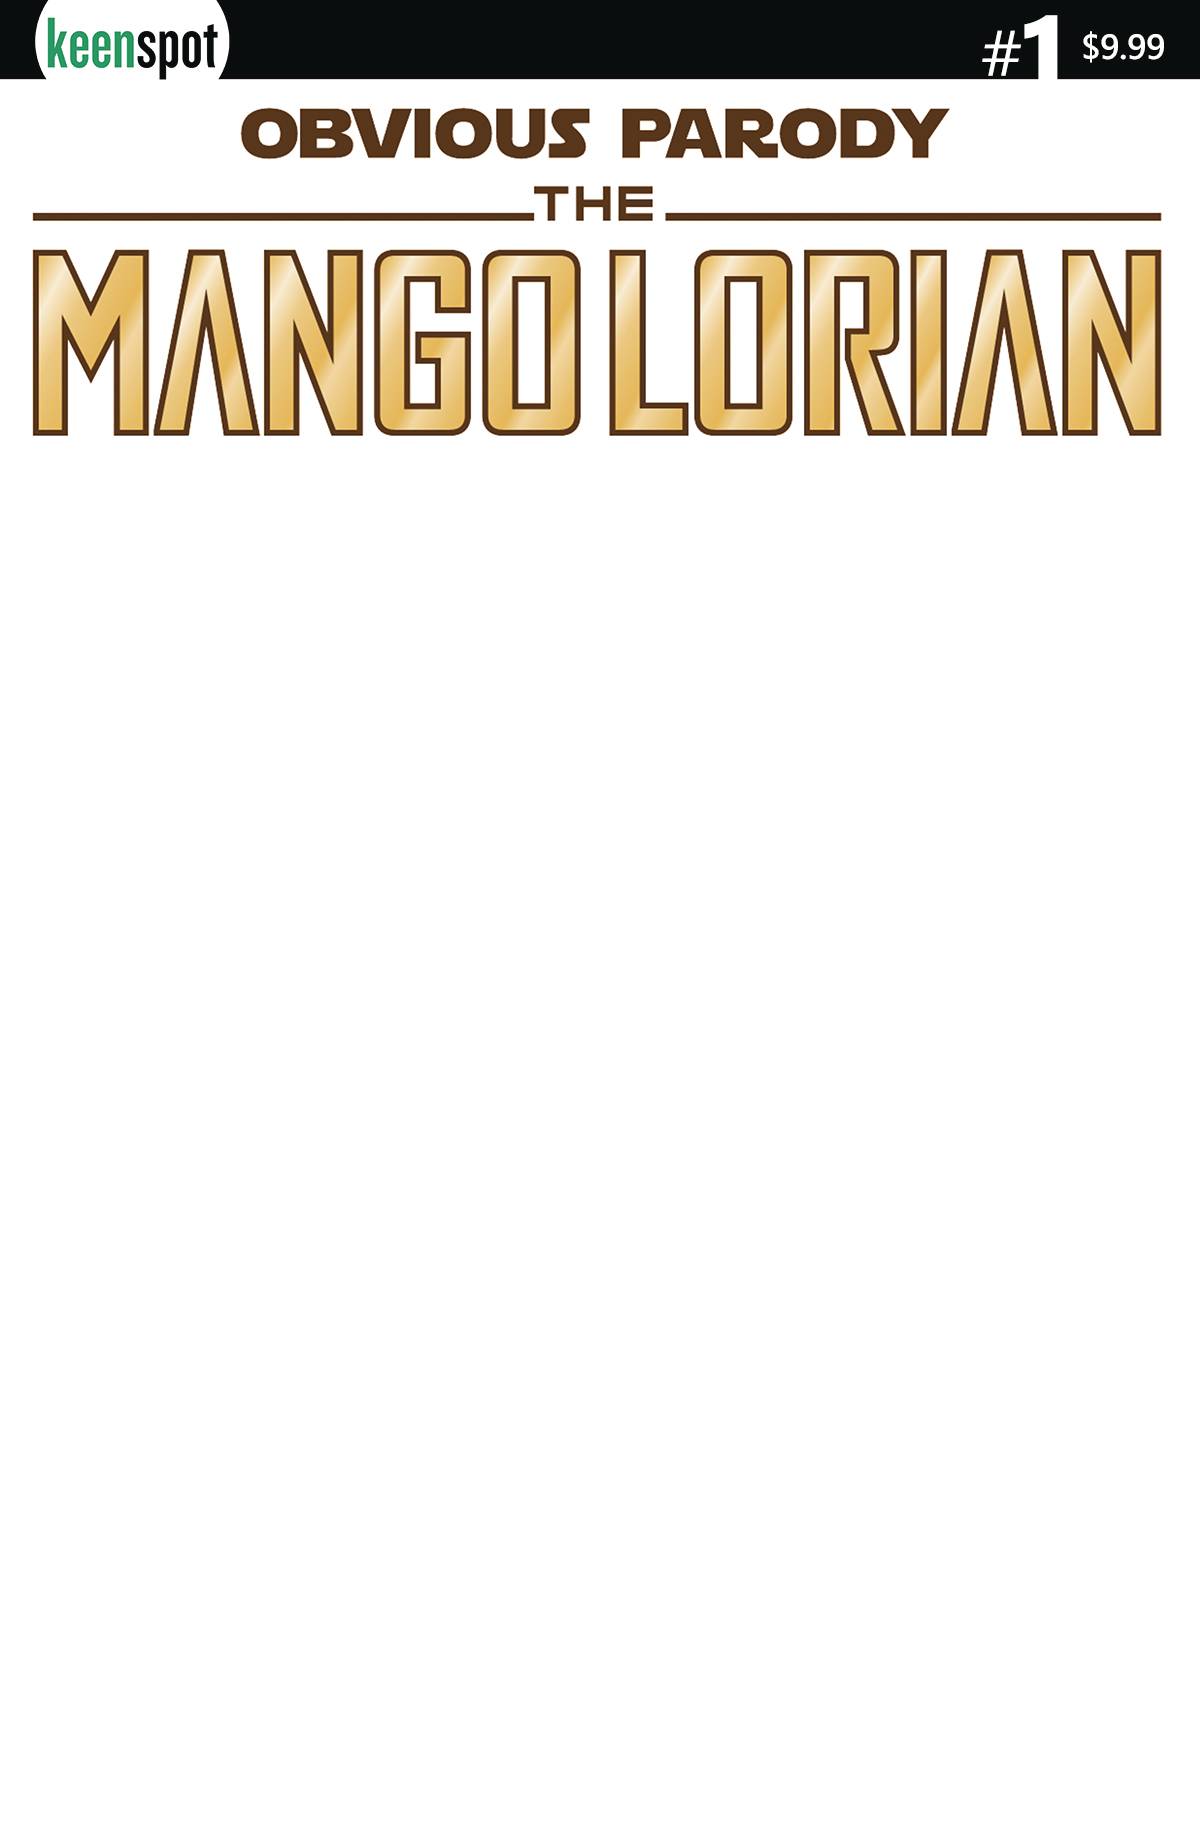 Mangolorian Blank